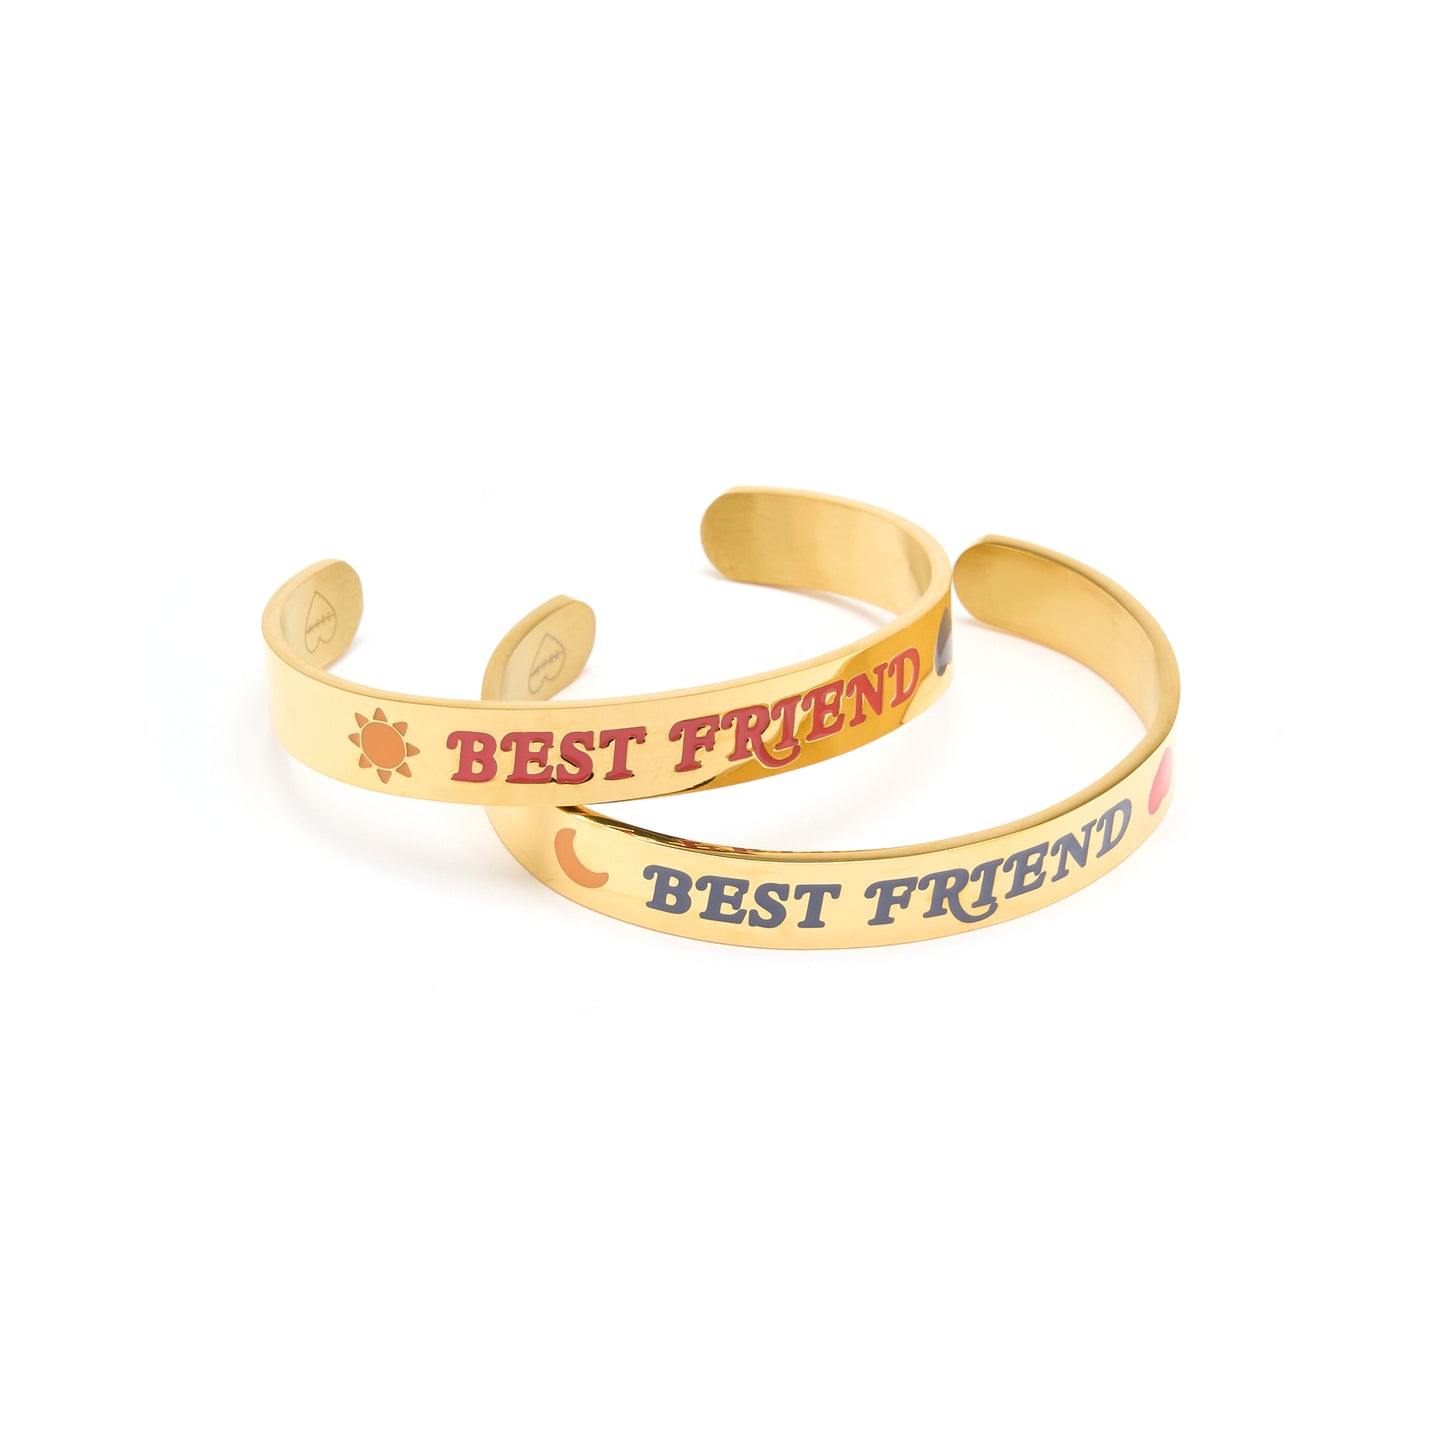 A-MORE Friendship Bracelet